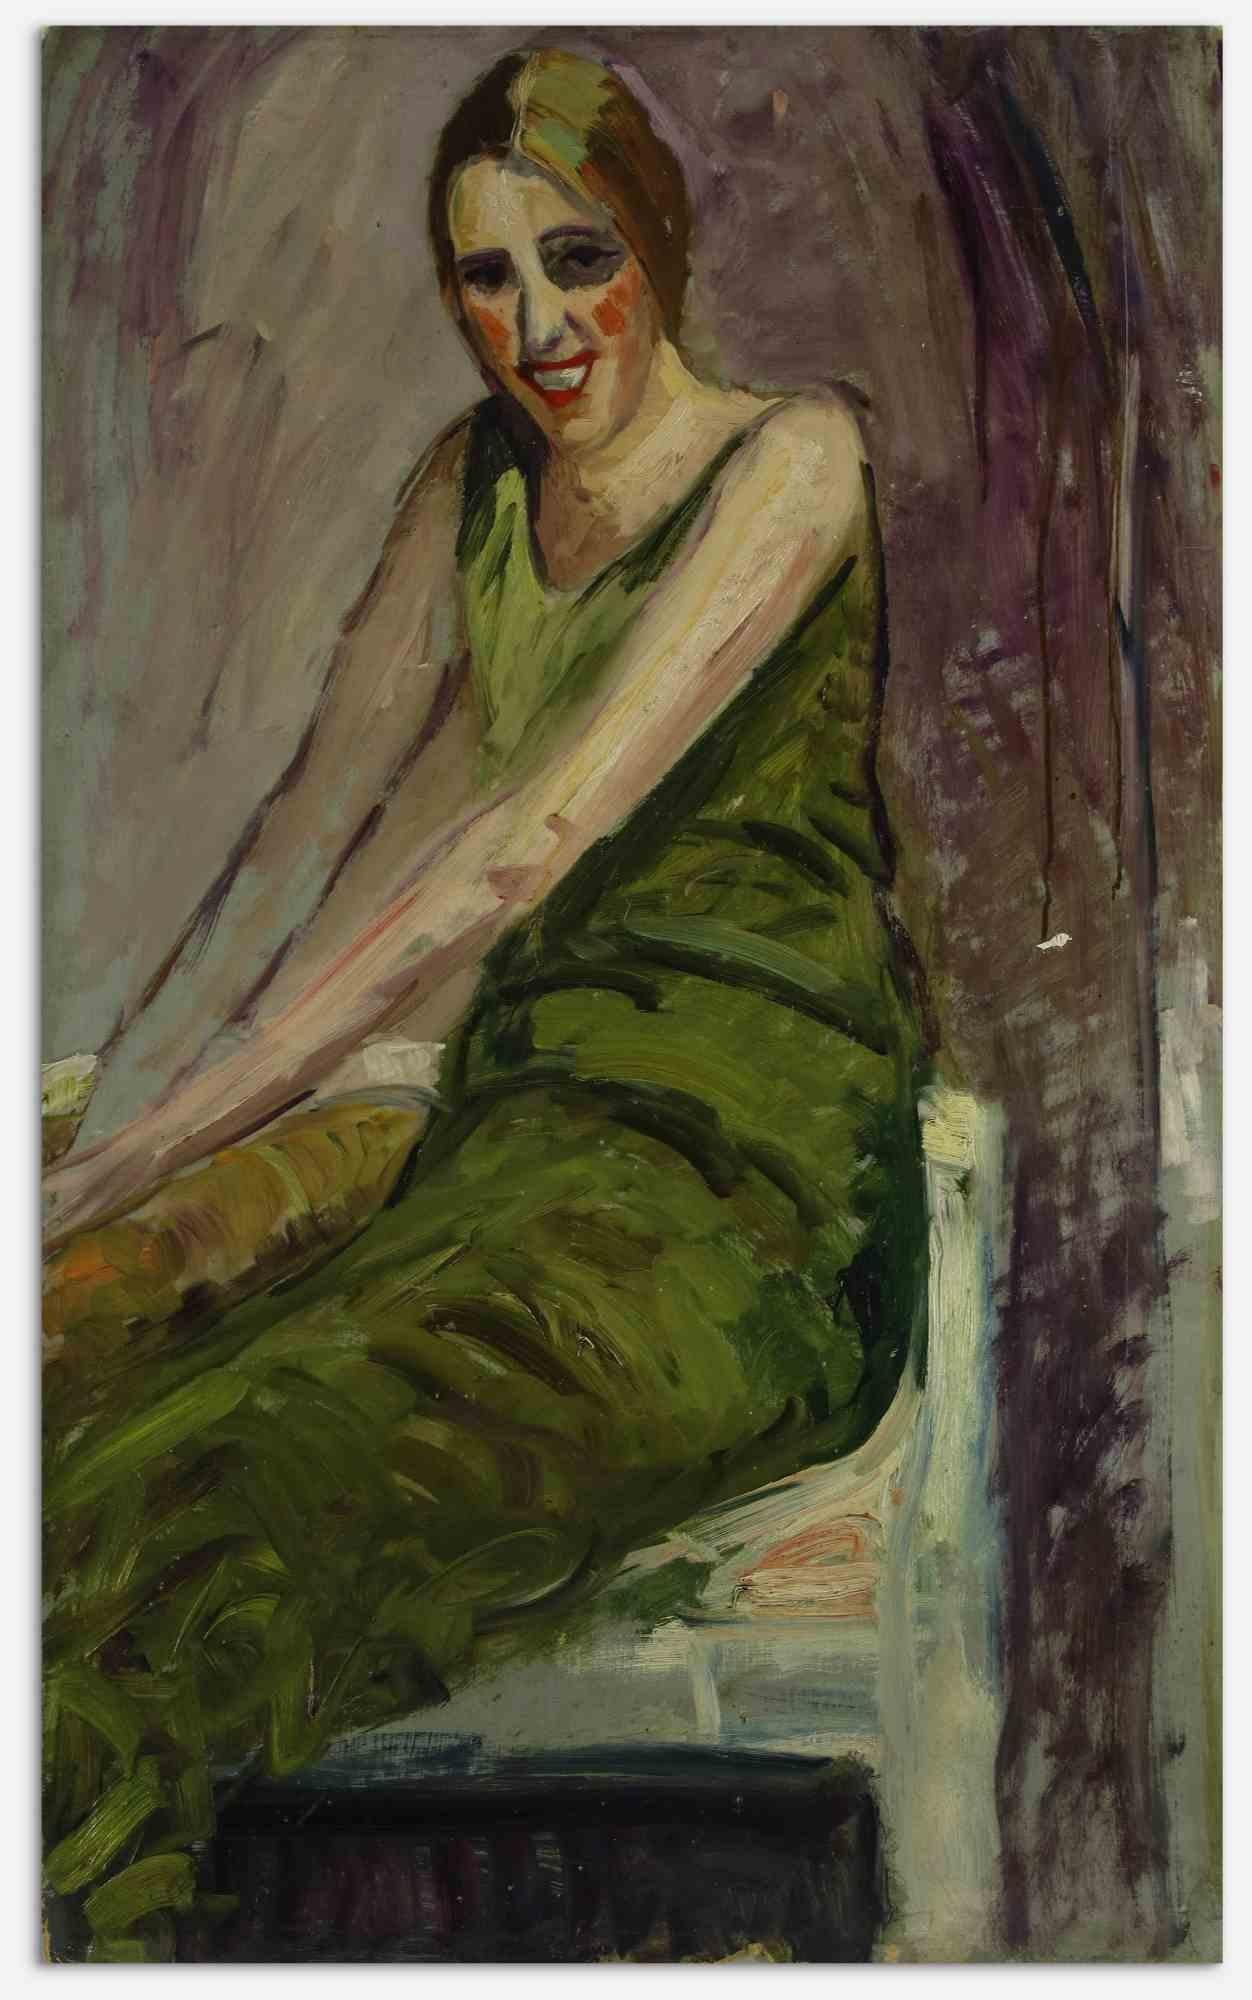 La femme est une œuvre d'art moderne originale réalisée par Antonio Feltrinelli dans les années 1930.

Peinture à l'huile sur carton de couleurs mélangées

Non signé.

Antonio Feltrinelli (Milan, 1887 - Gargnano, 1942)
Il est né à Milan le 1er juin